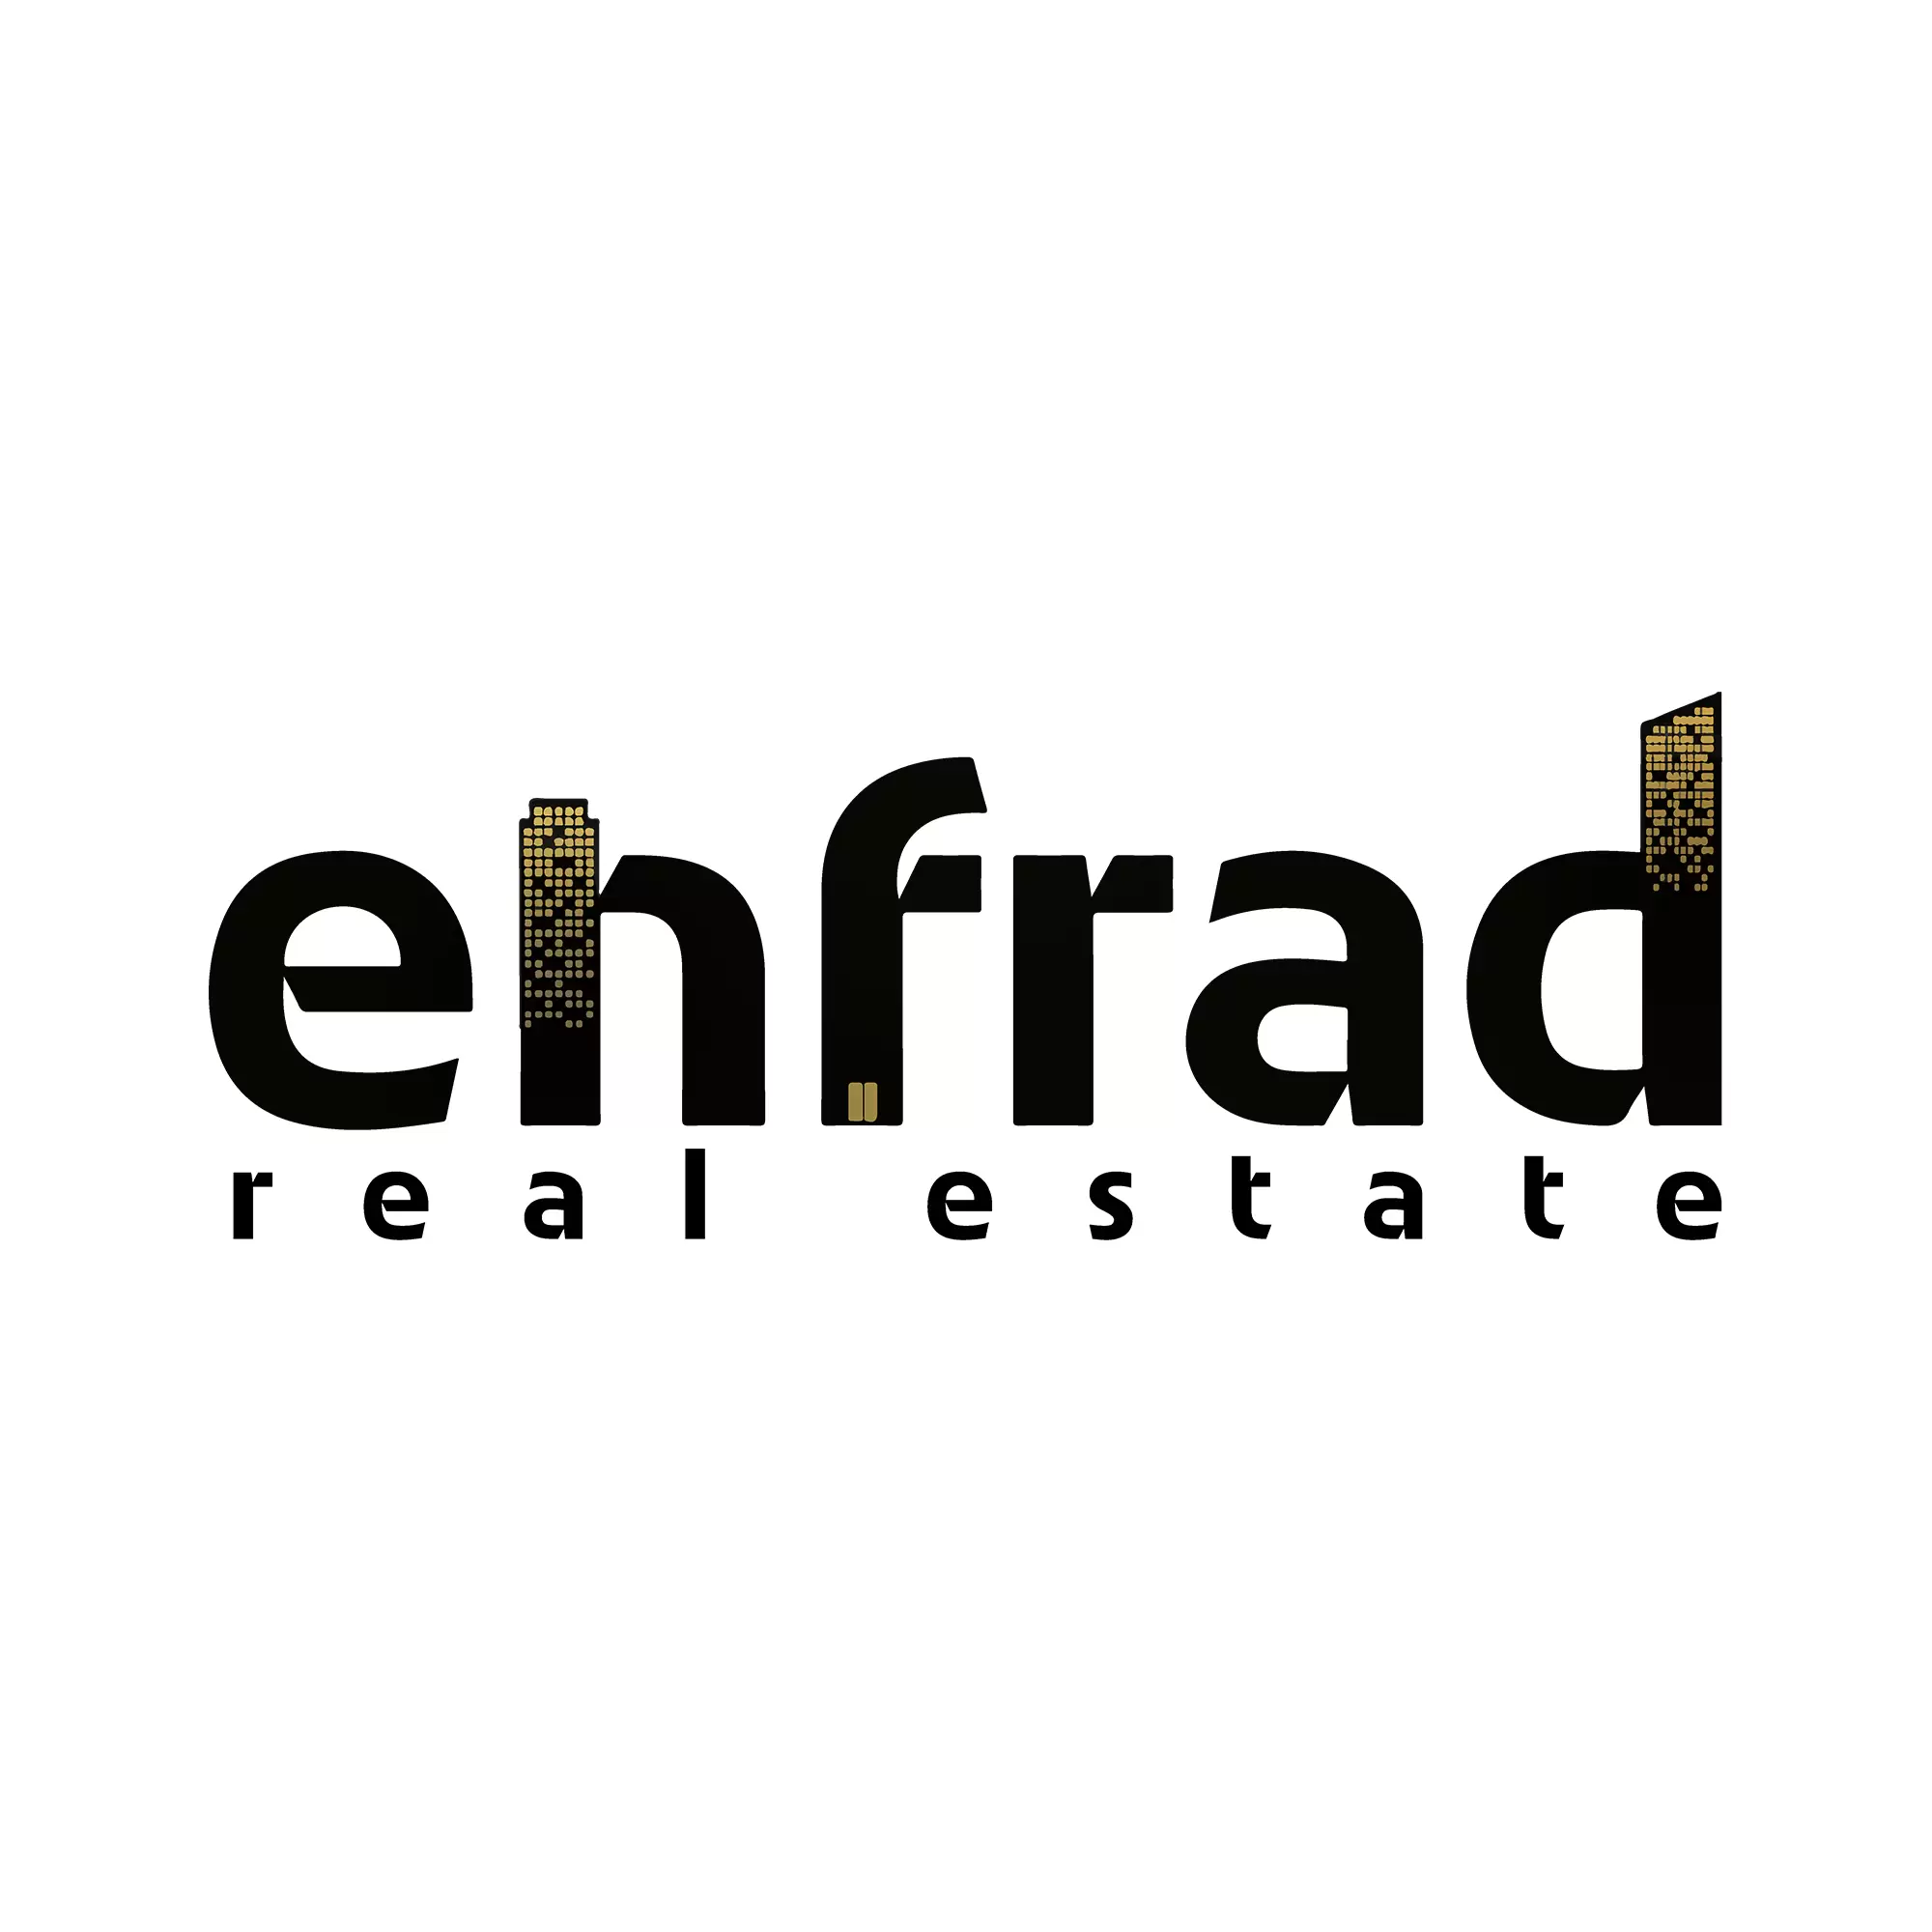 Enfrad real estate